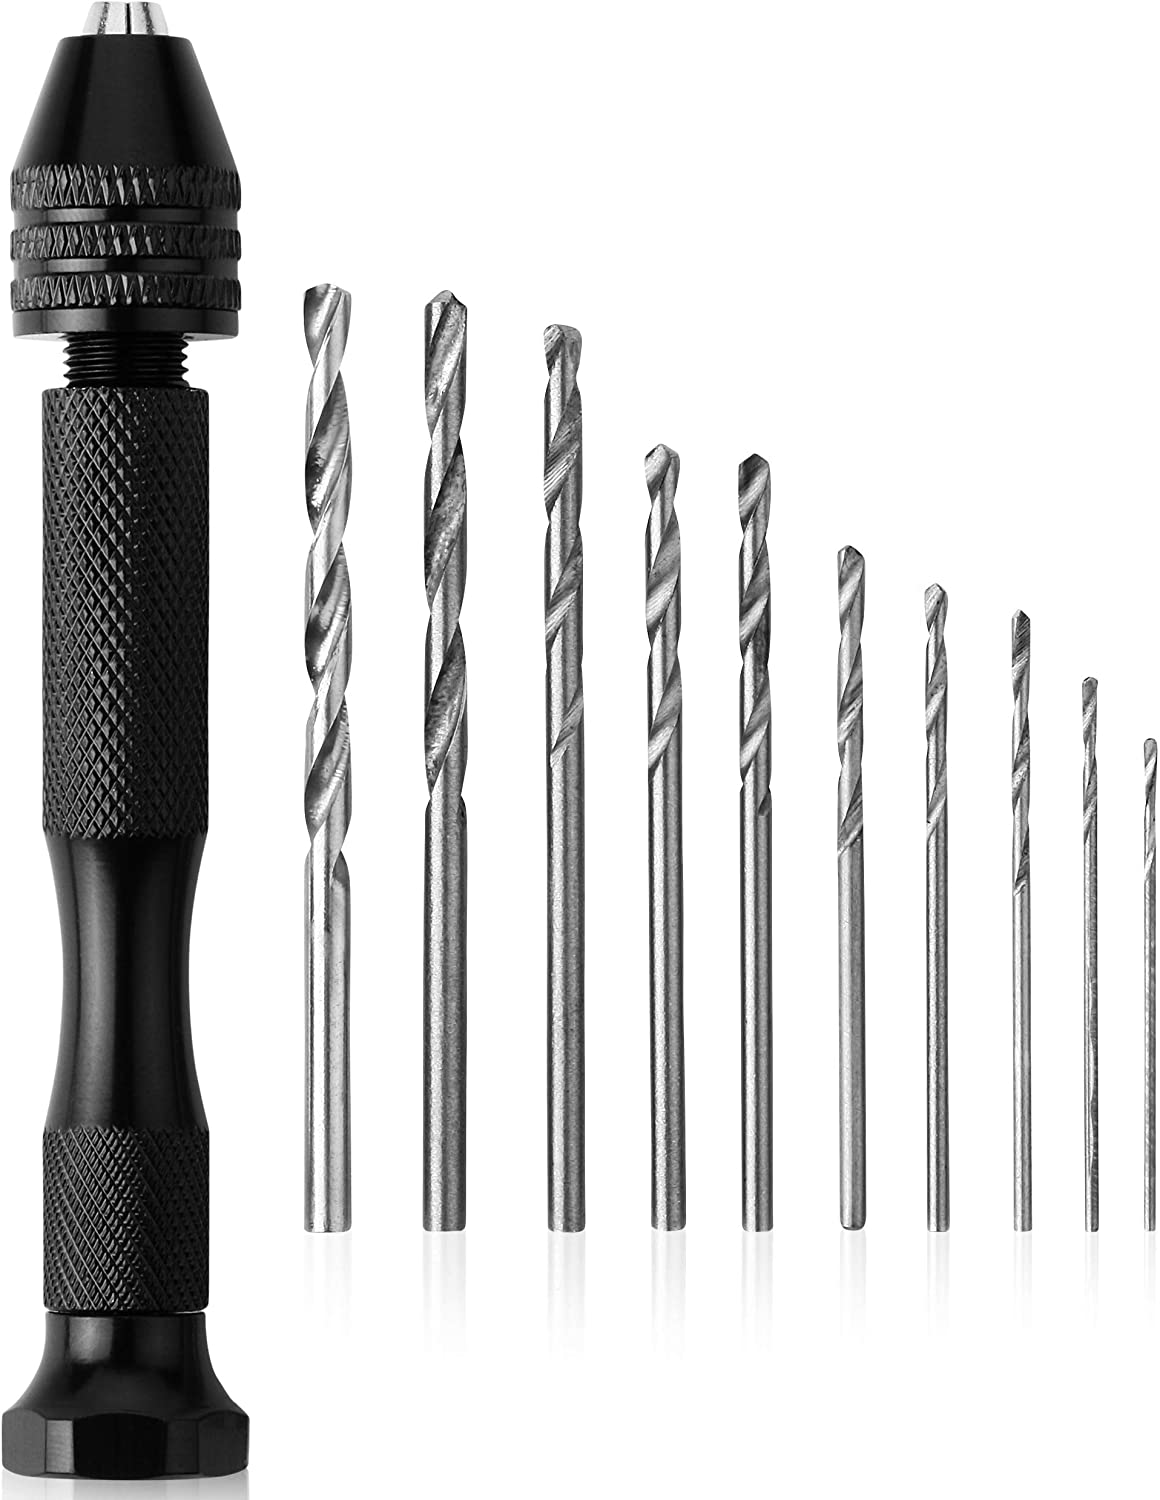 Mr. Pen- Hand Drill with 10 Drill Bits (0.6-3.0mm), Jewelry Drill, Resin  Drill, Mini Drill, Hand Drill for Jewelry Making, Pin Vise Hand Drill, Hand  Drill for Resin, Micro Drill Bit, Mini